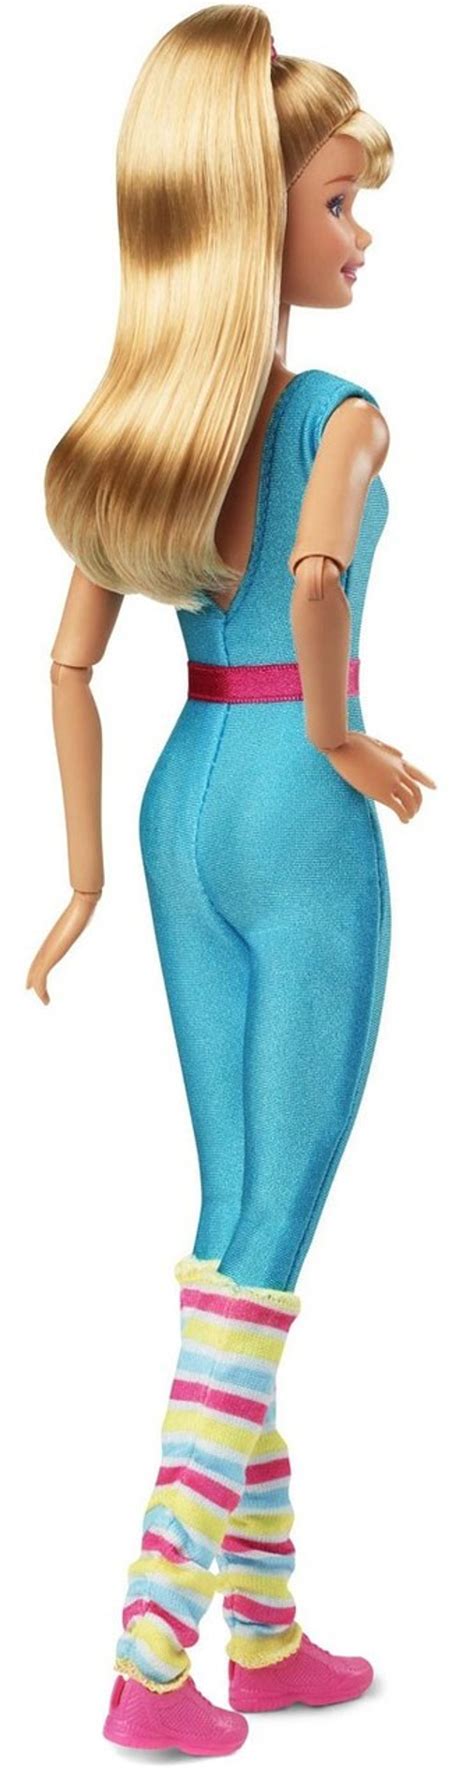 Toy Story 4 Barbie Doll Mattel Toywiz